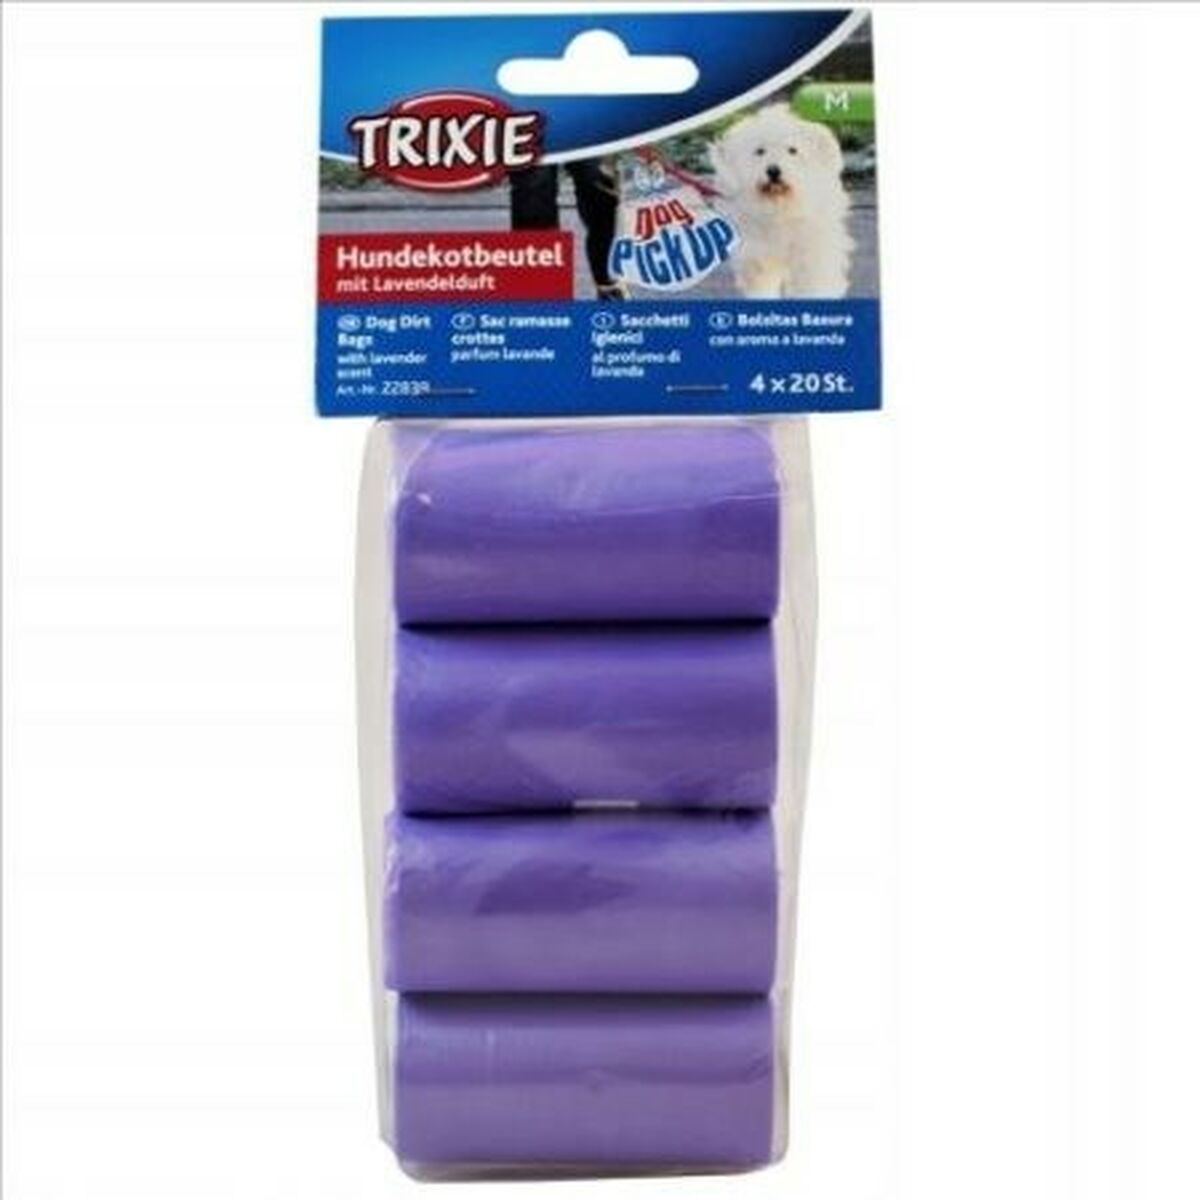 Waste bag Trixie 22839 Purple Plastic (80 Pieces)